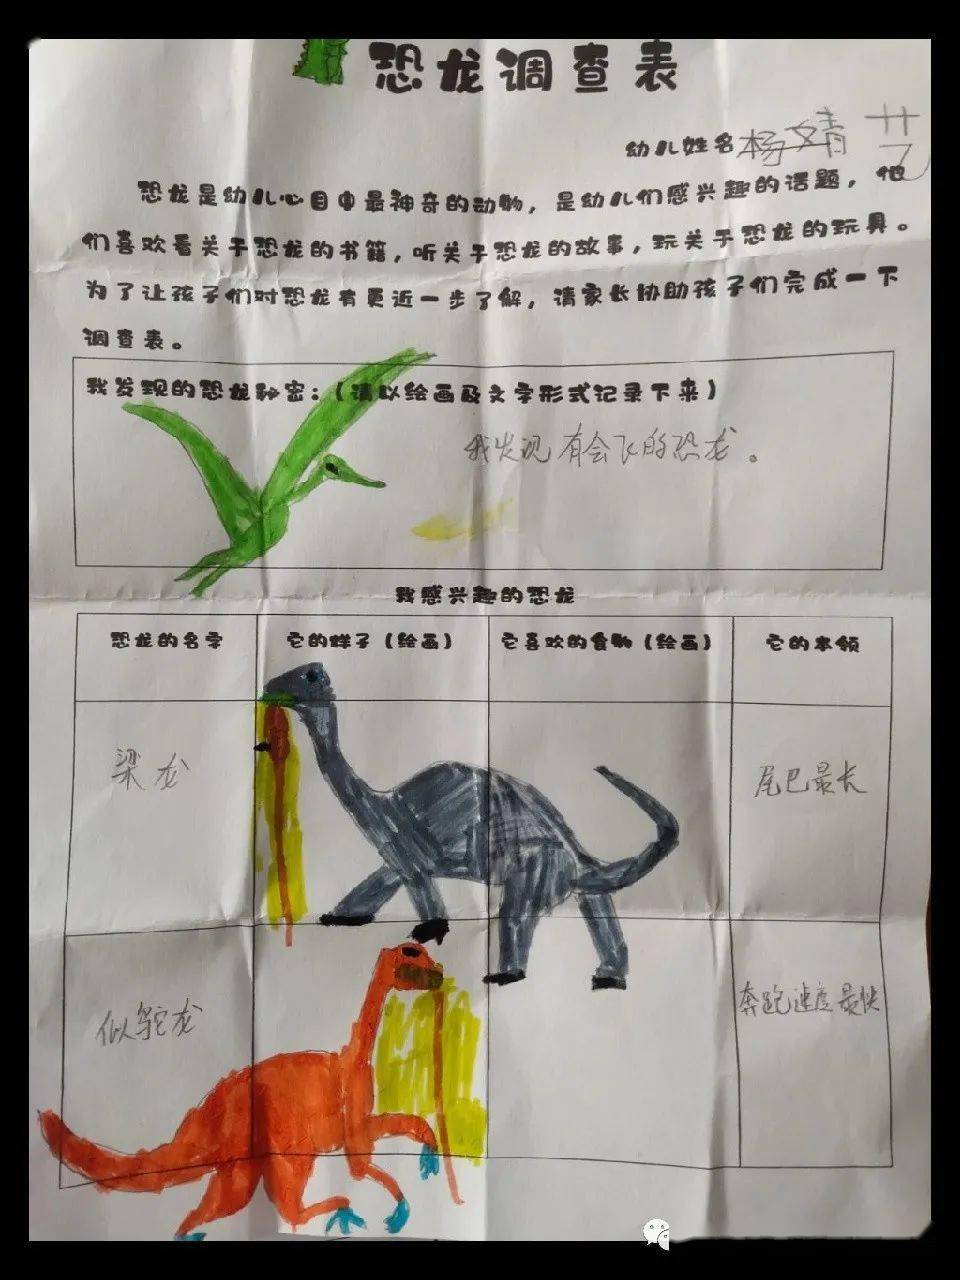 幼儿园恐龙调查表简画图片